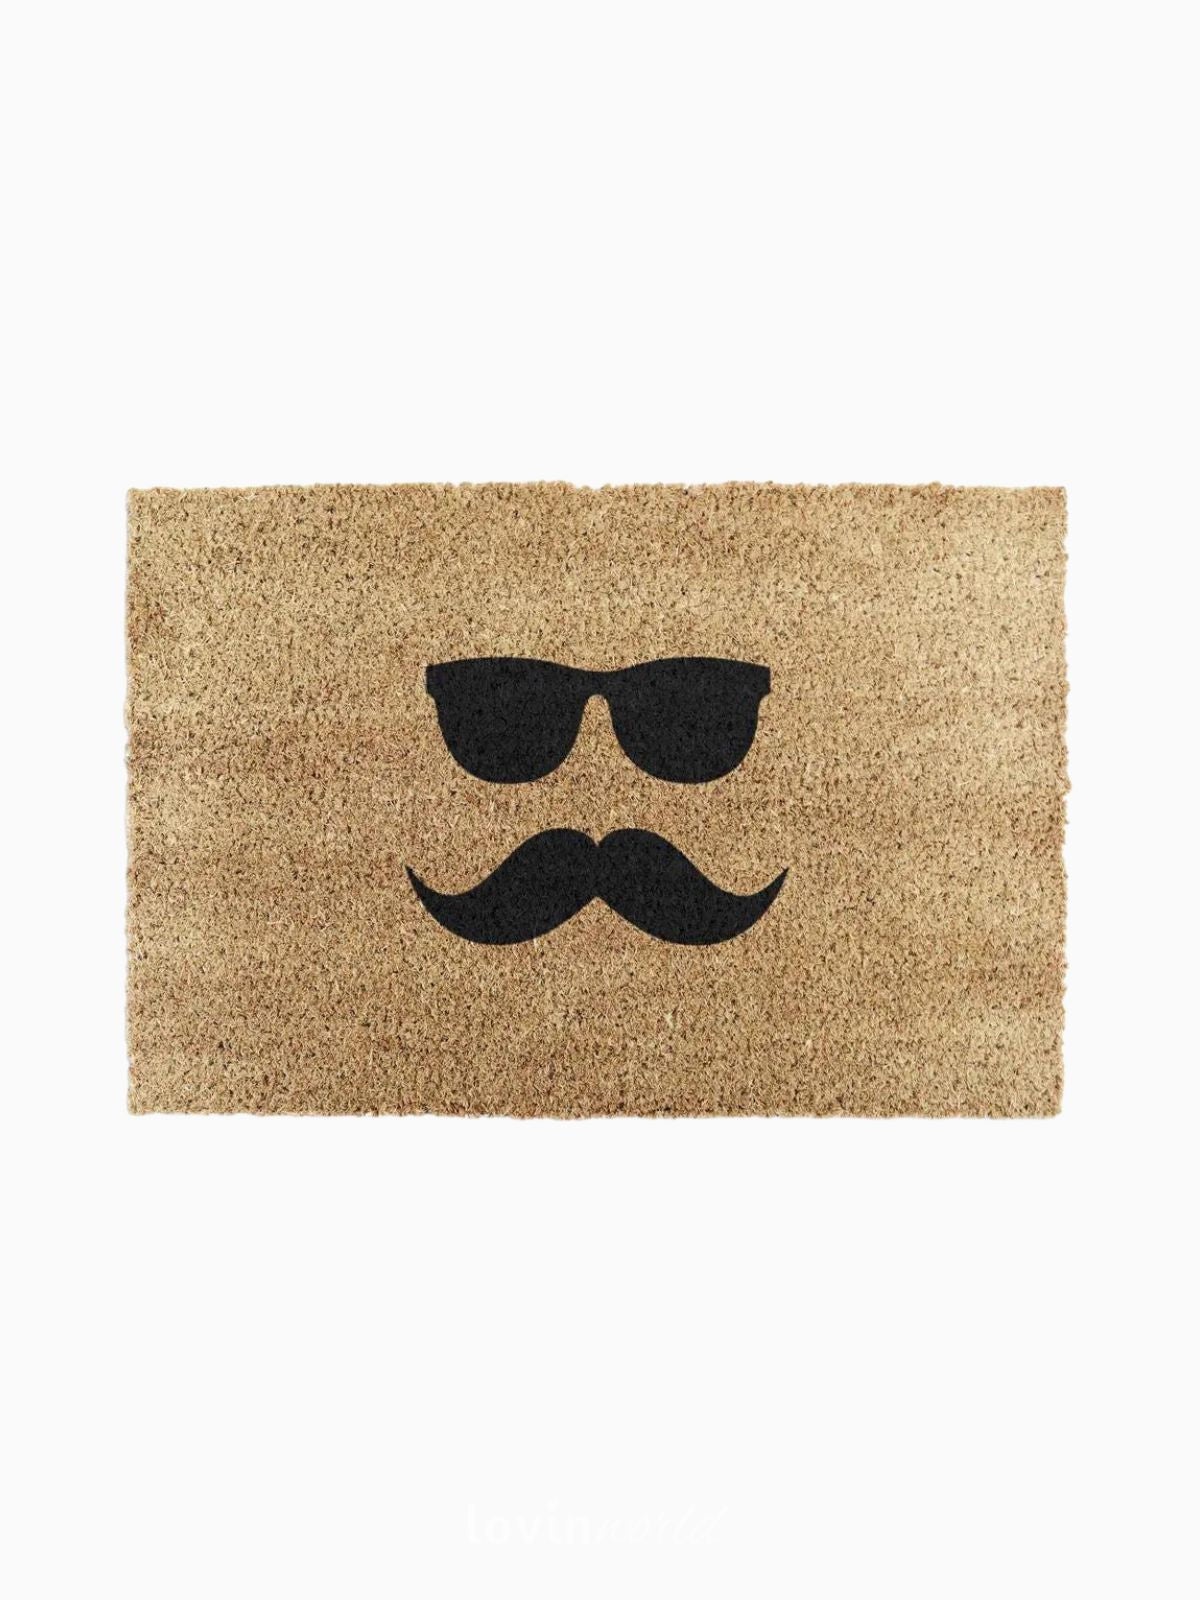 Zerbino Mustache & Glasses, in fibra di cocco naturale 40x60 cm.